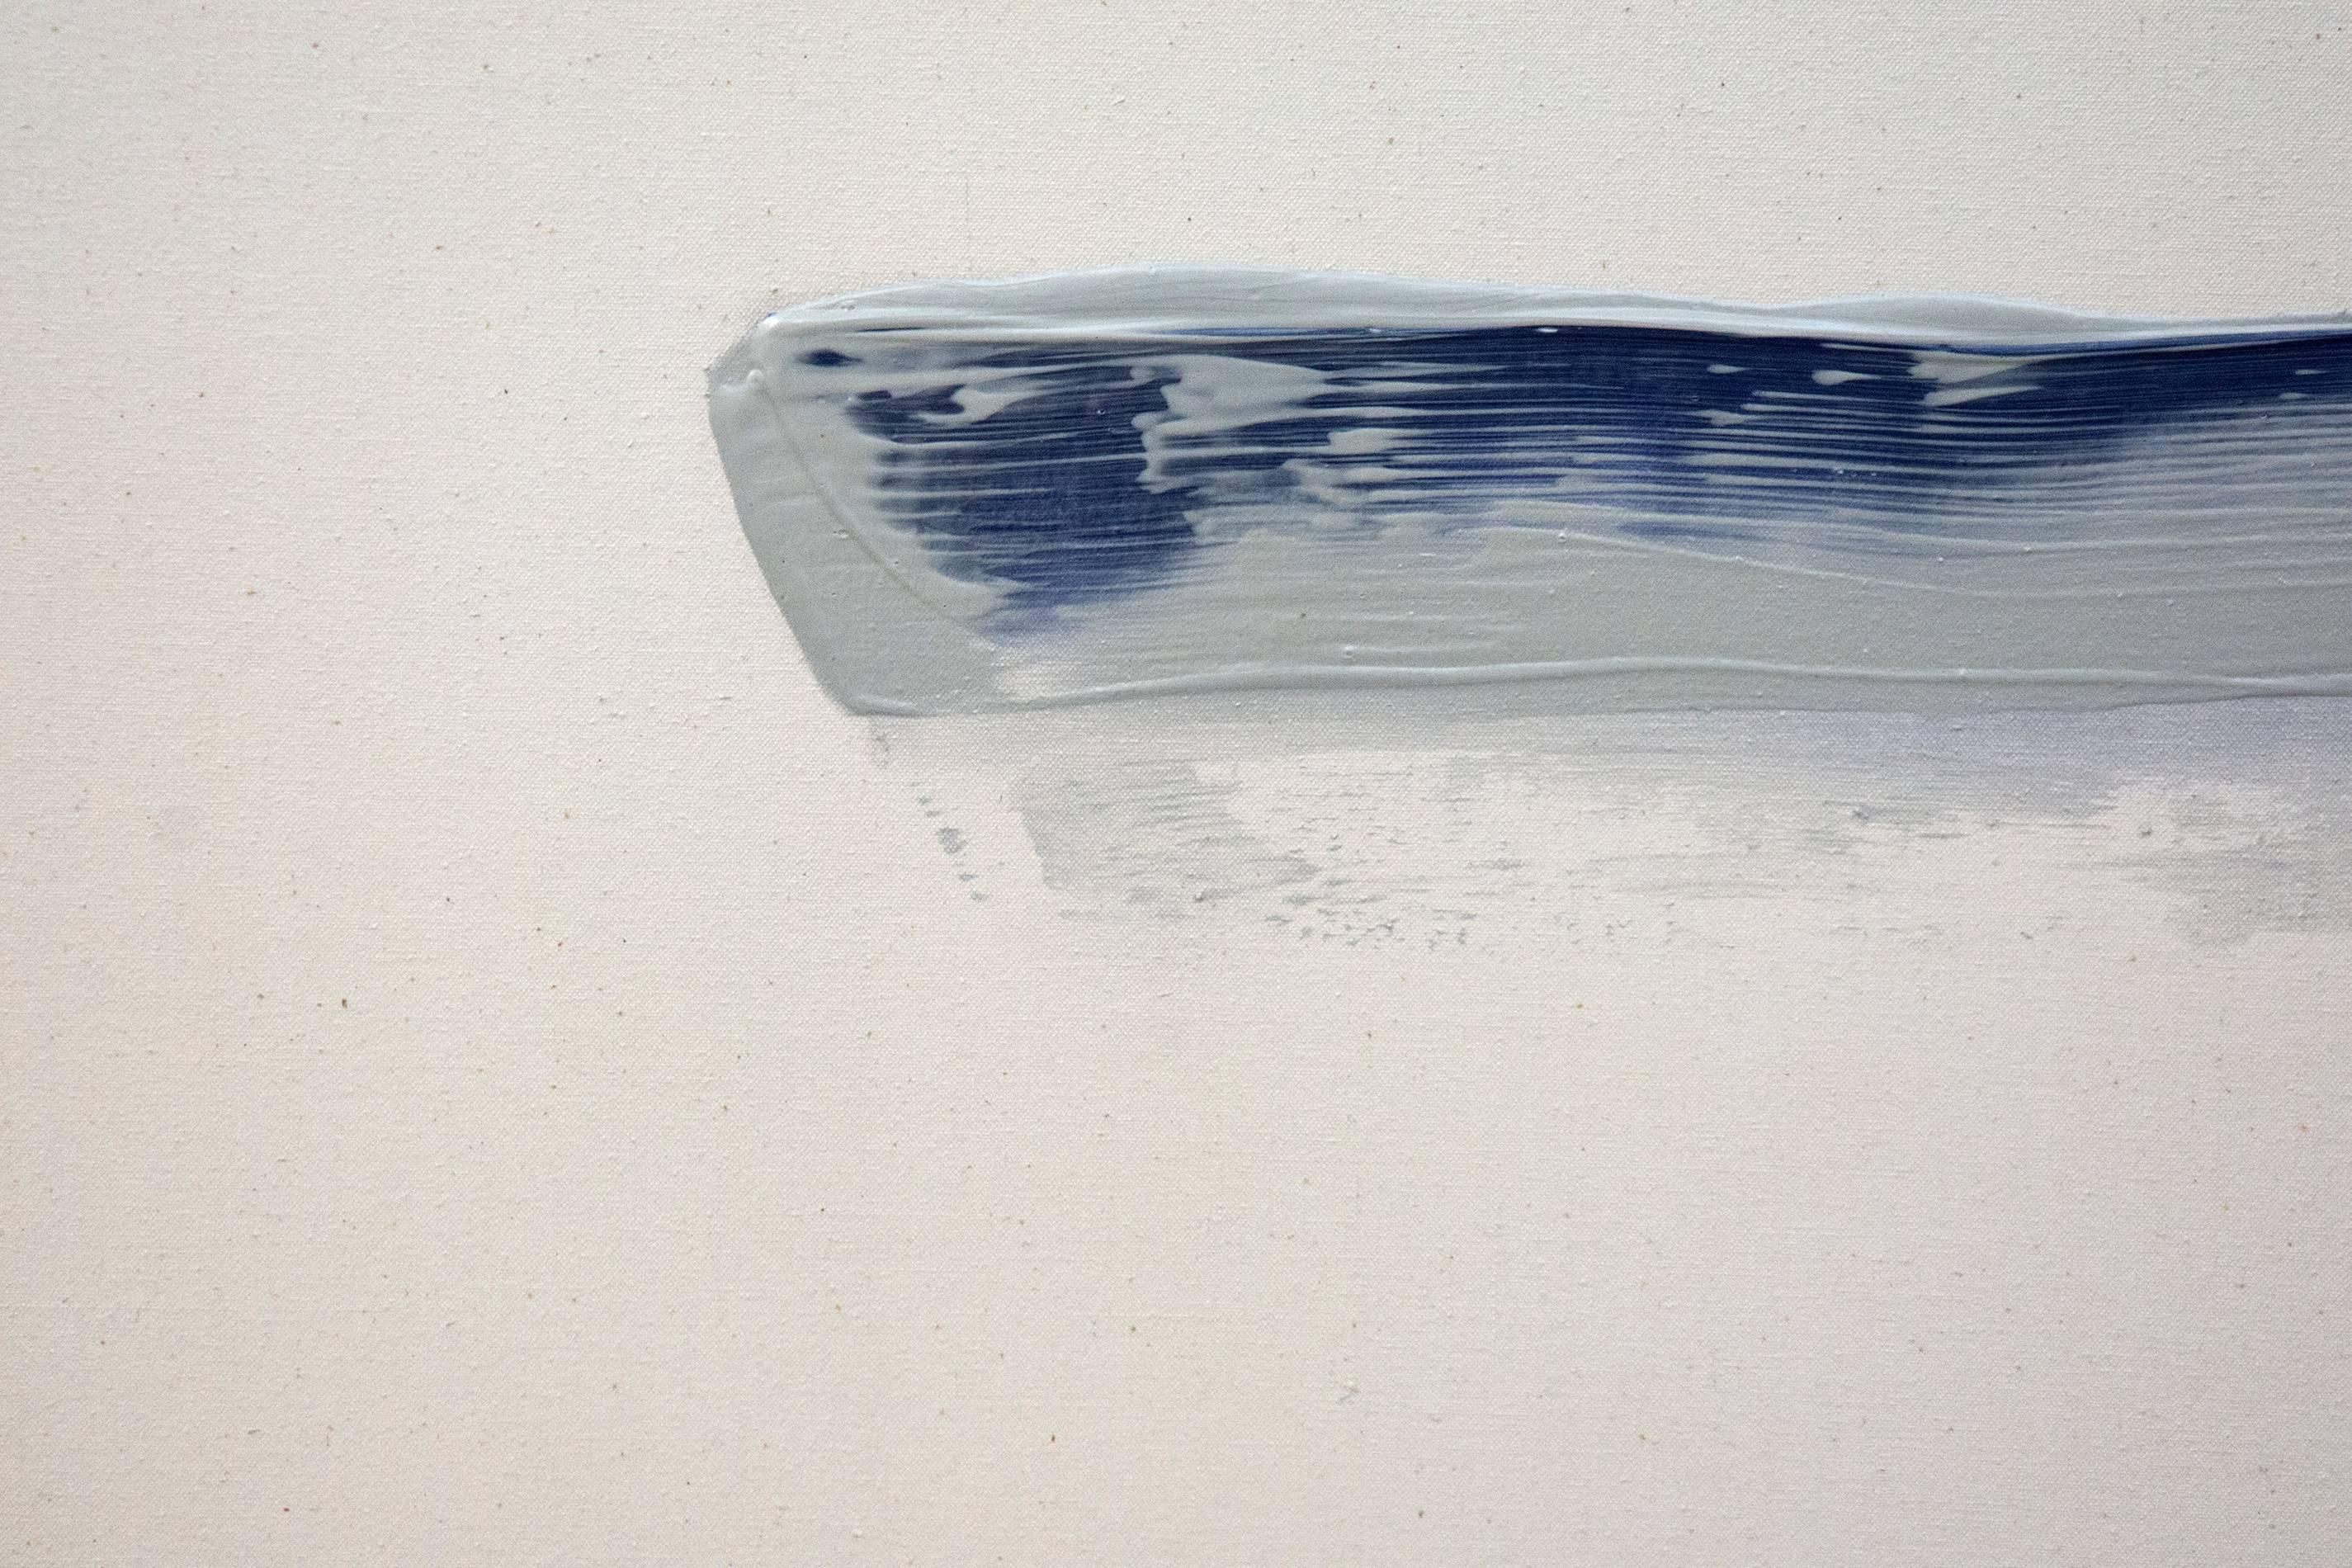 Karmesinrote, stahlblaue, moosgrüne und taubengraue Tupfer schweben in ruhiger Kommunikation auf einer weiß gewaschenen Leinwand, die durch einen Strom von Kanariengelb unterteilt ist. Dieses große Acrylbild von Milly Ristvedt ist eine poetische